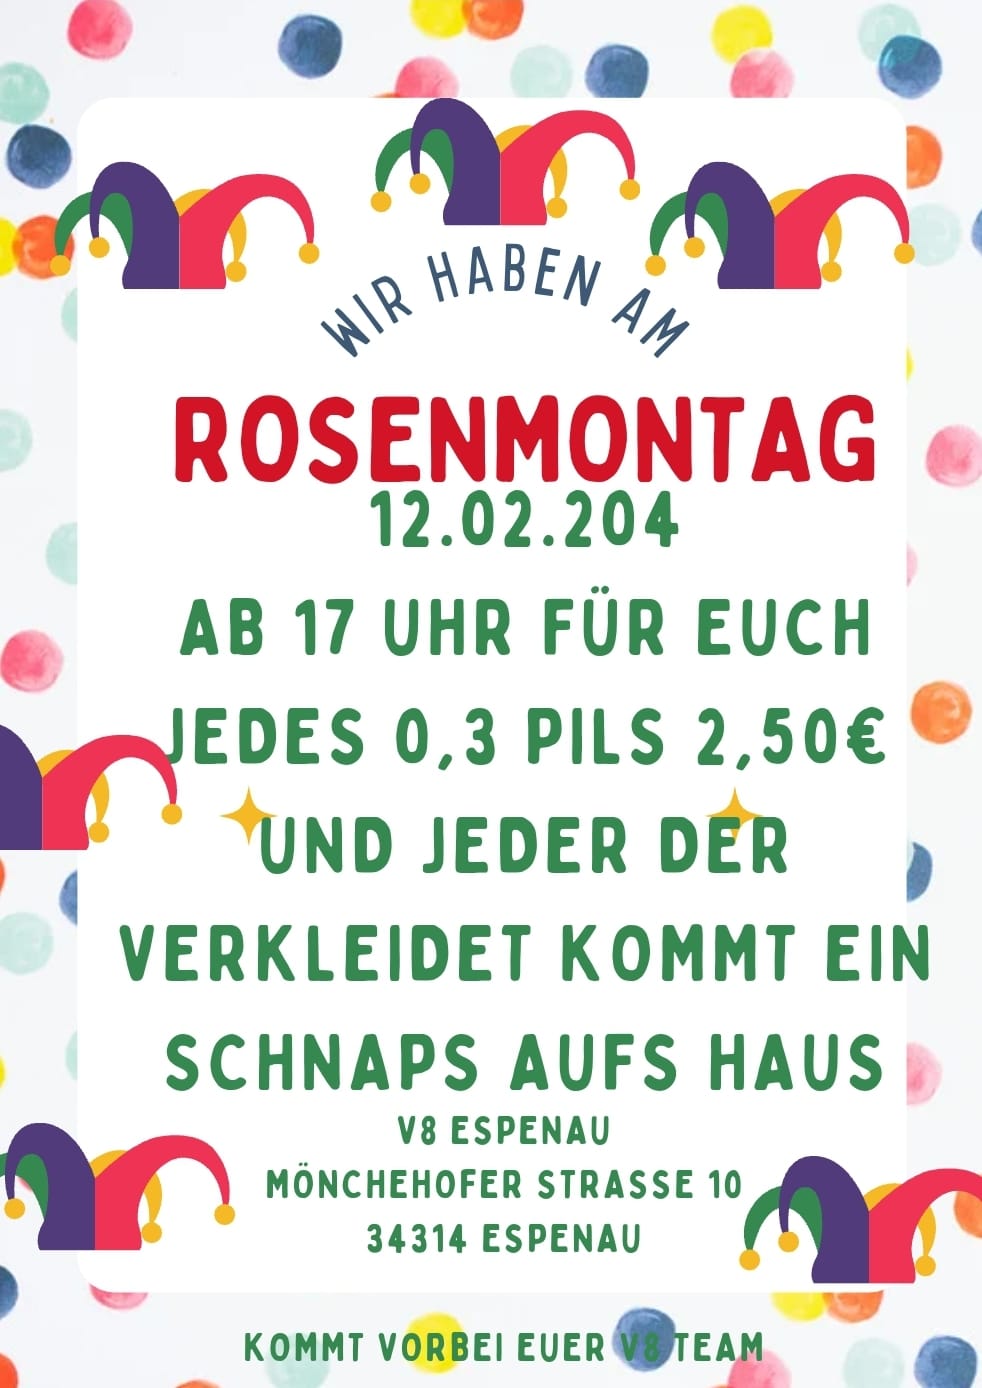 Flyer Rosenmontag Special in der Gaststätte V8